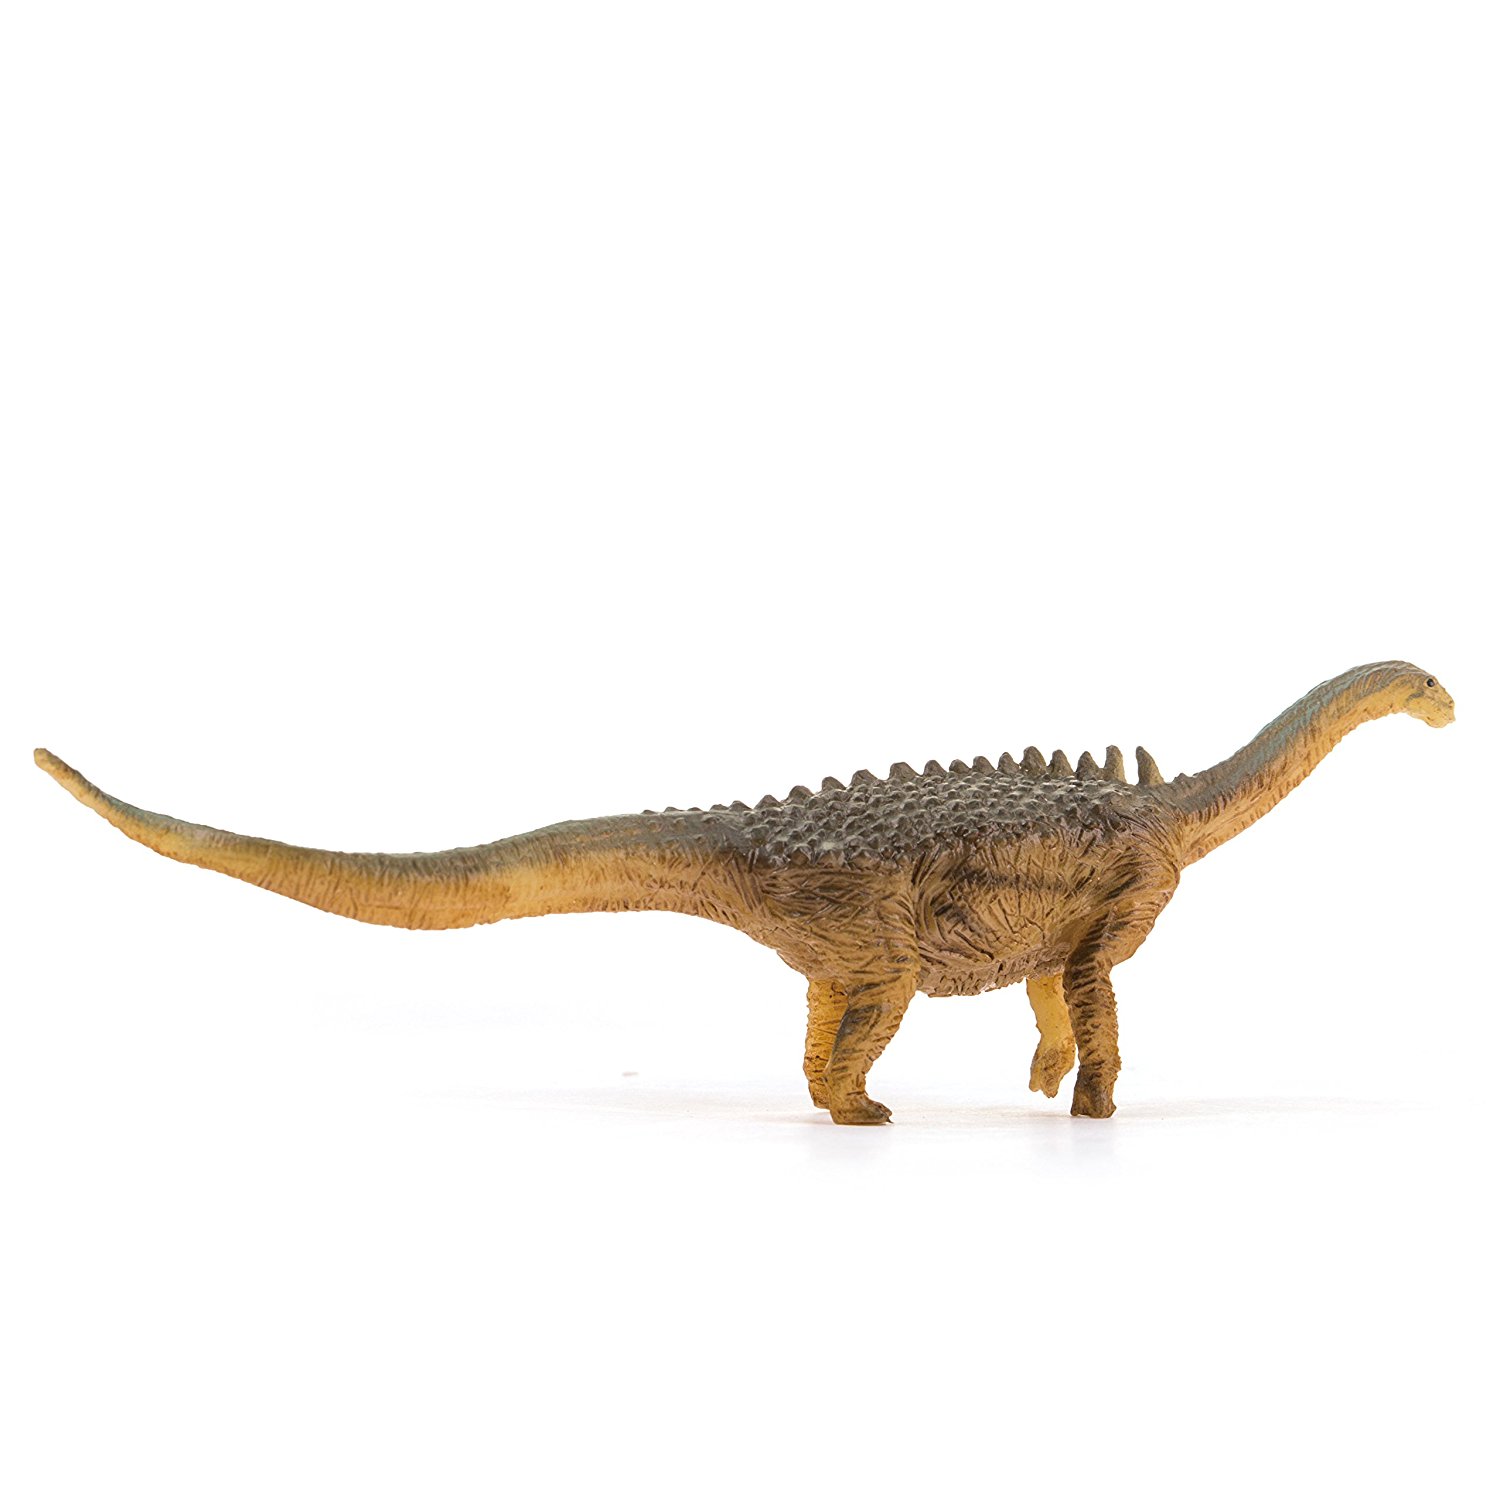 PNSO Ampleosaurus